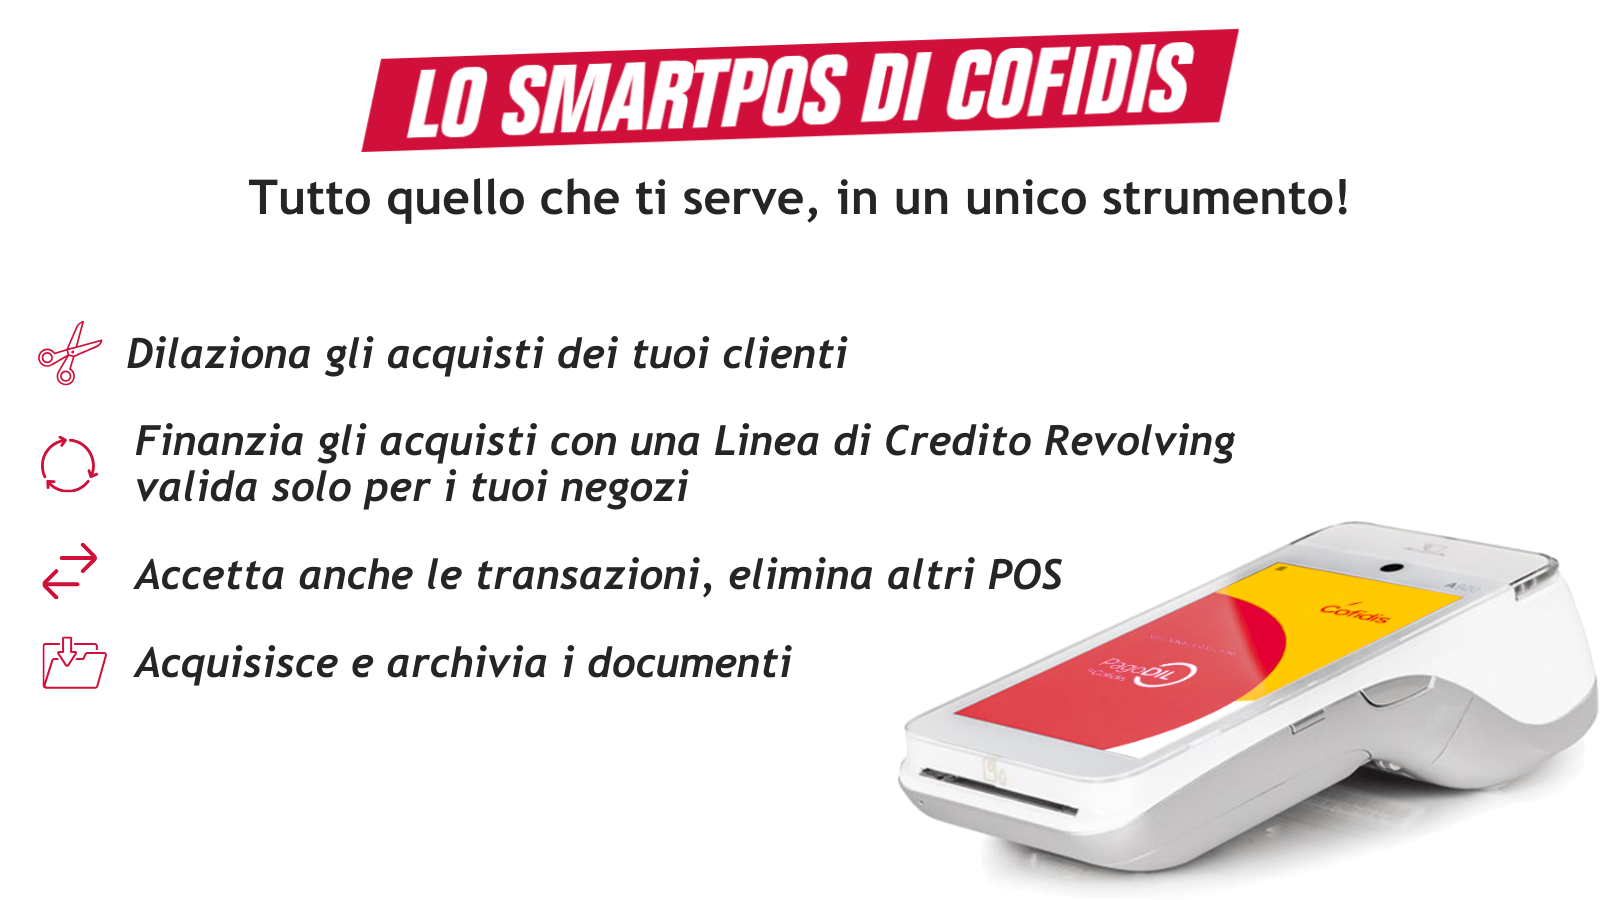 SmartPOS Cofidis per pagamenti rateali in negozio